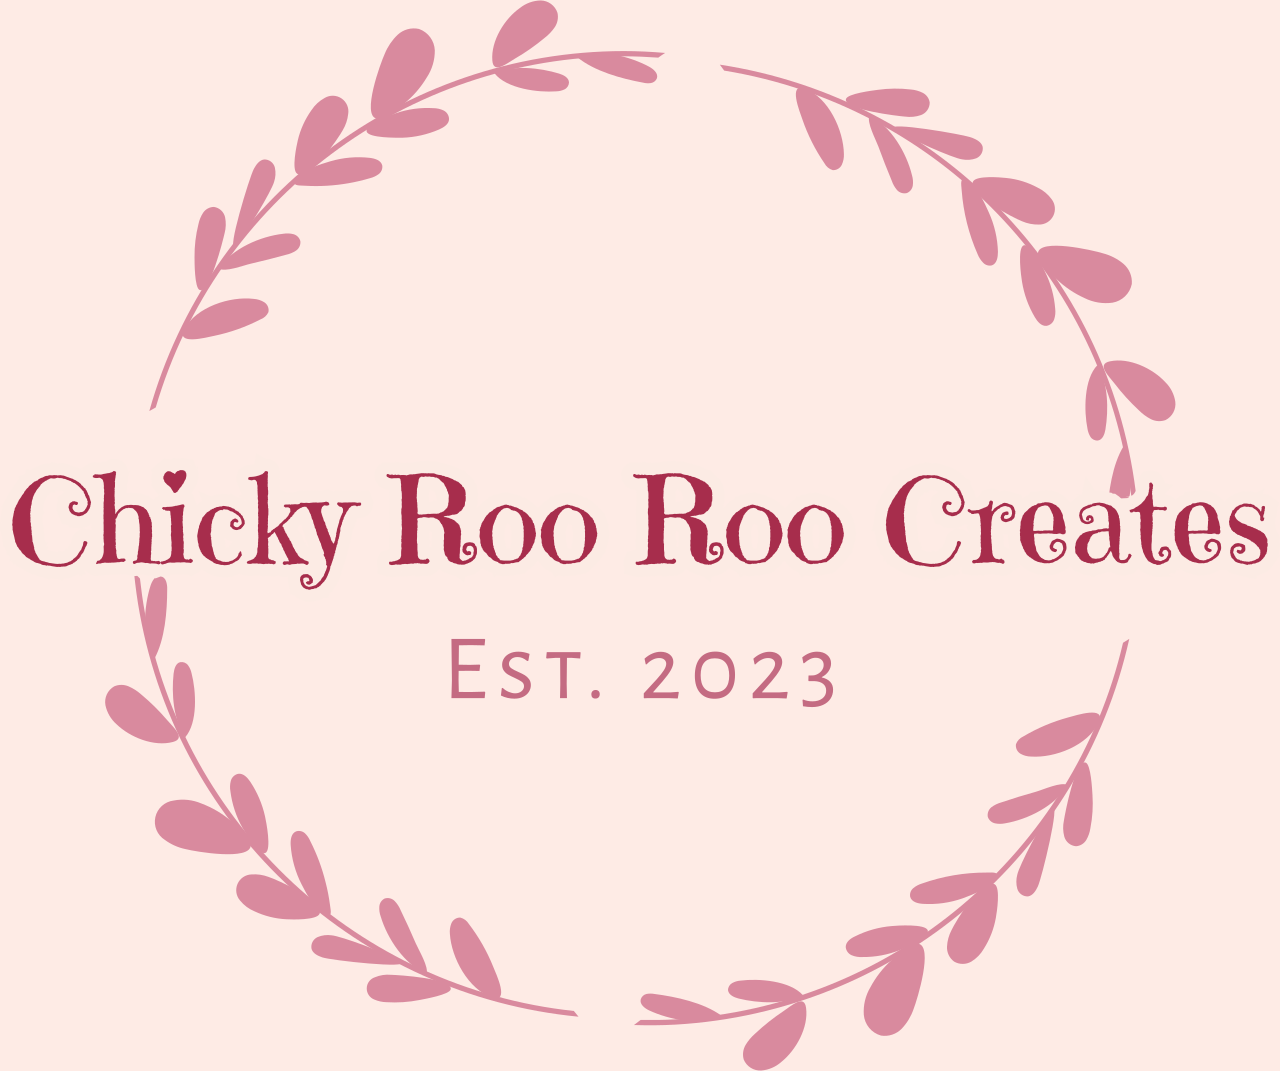 Chicky Roo Roo Creates's logo